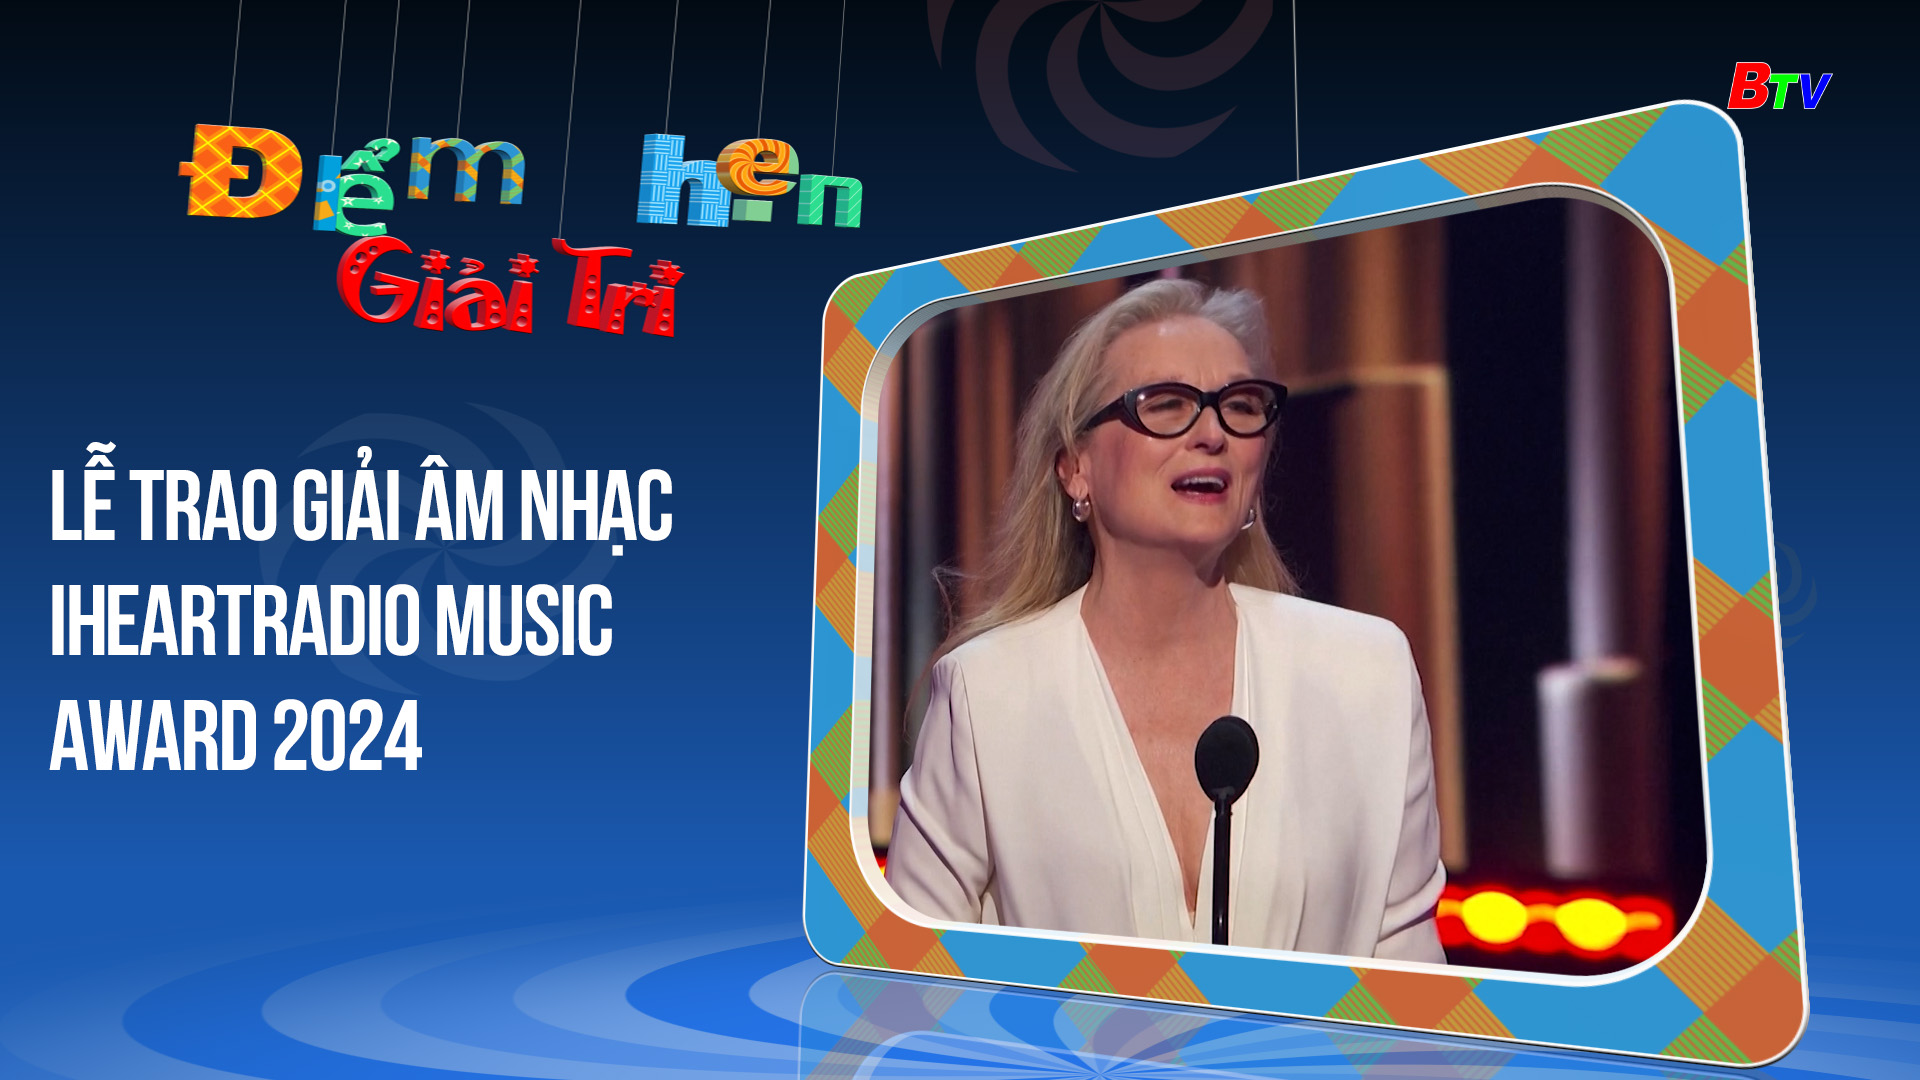 Lễ trao giải âm nhạc Iheartradio Music Award 2024 | Điểm hẹn giải trí | 3/4/2024